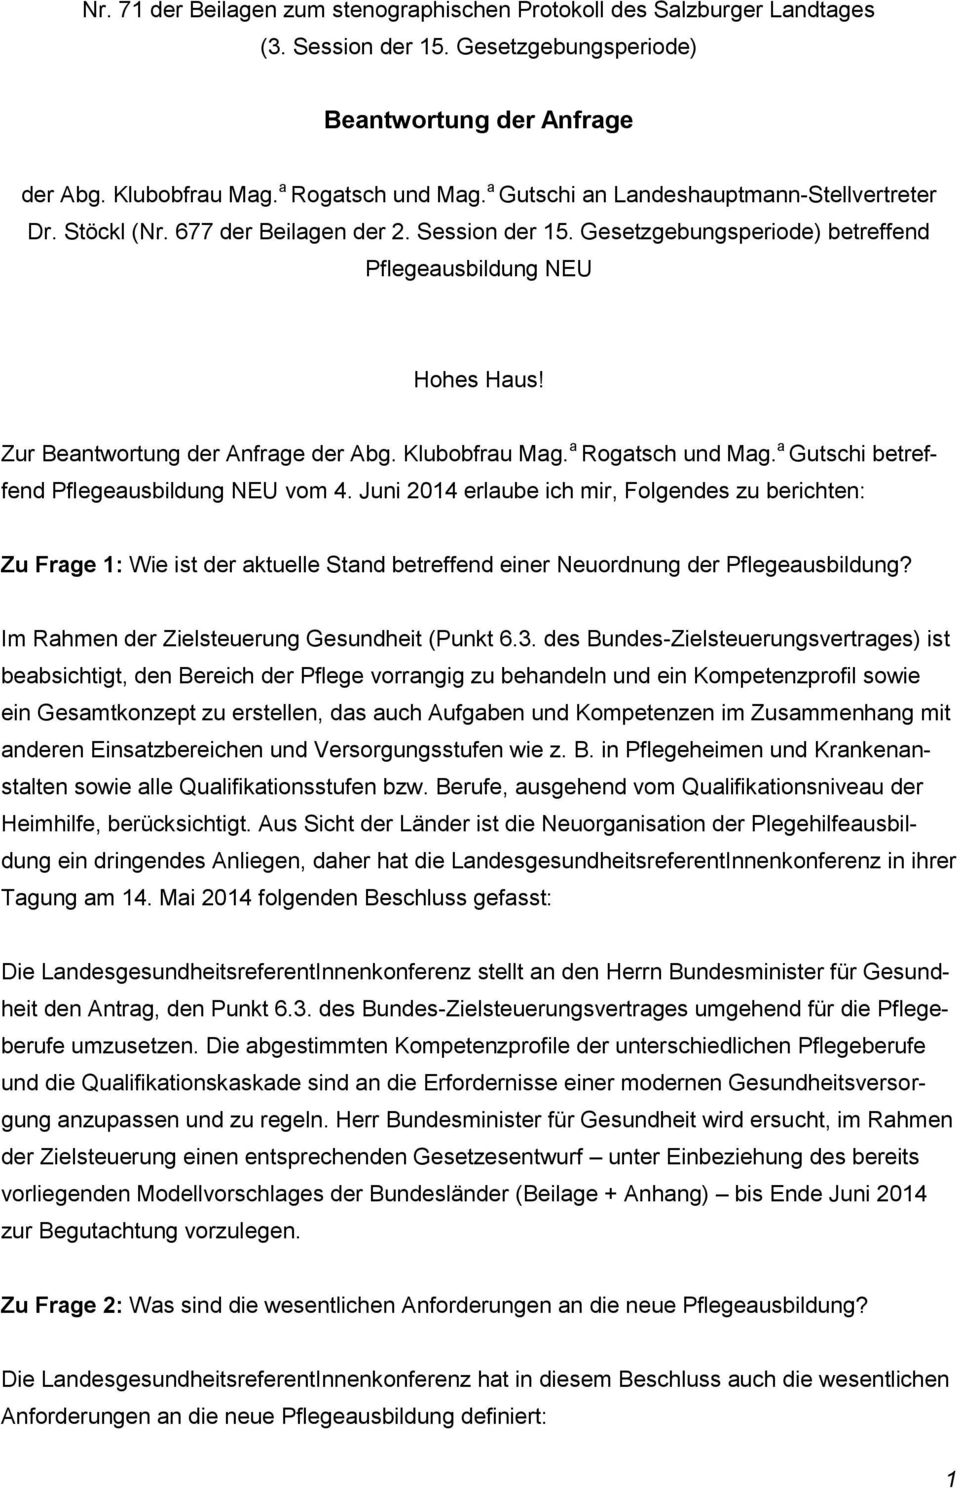 Zur Beantwortung der Anfrage der Abg. Klubobfrau Mag. a Rogatsch und Mag. a Gutschi betreffend Pflegeausbildung NEU vom 4.